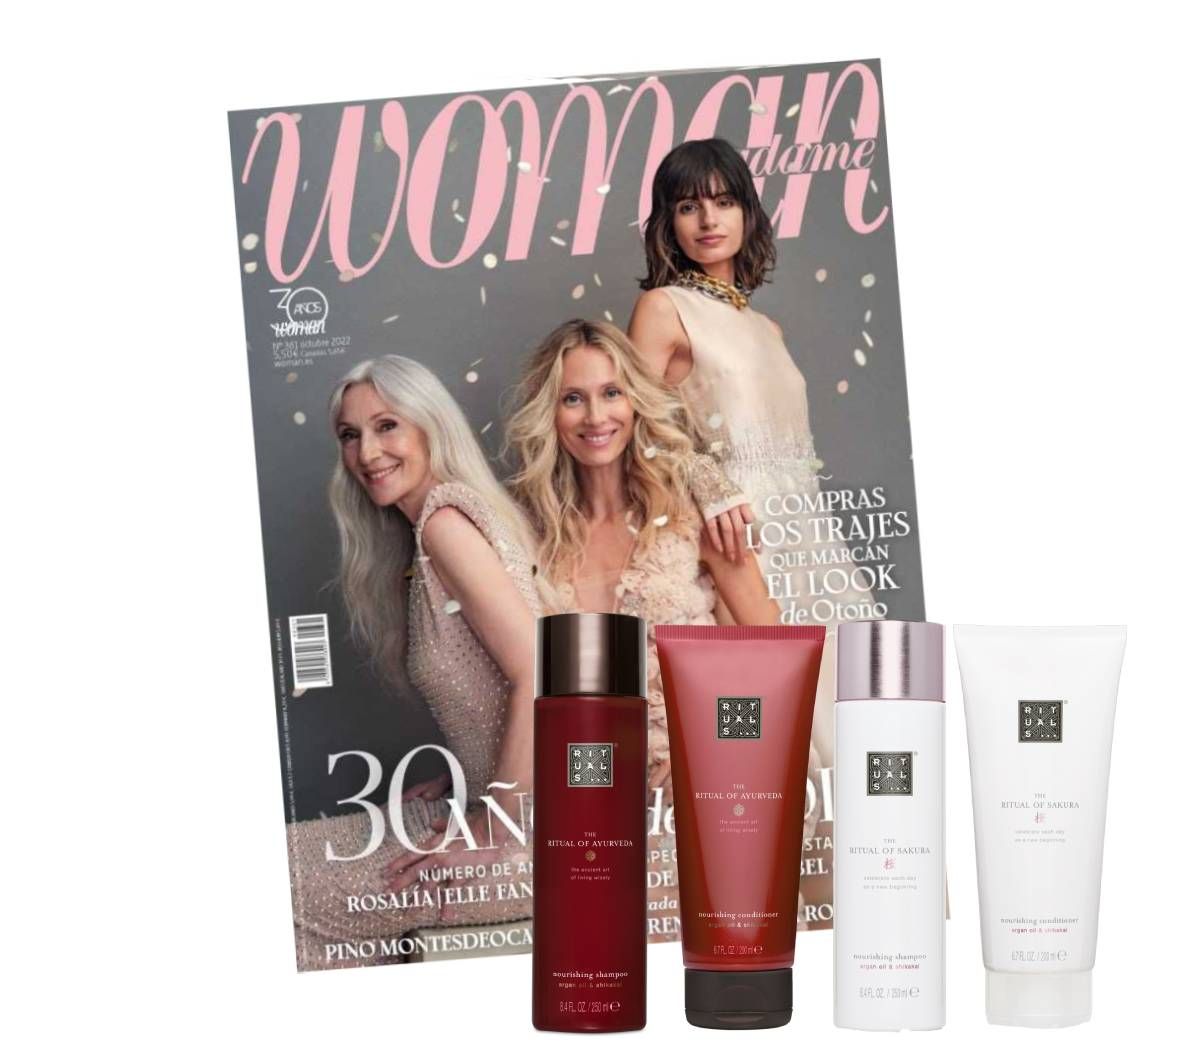 Sumario y regalos del número de octubre de la revista Woman - Woman